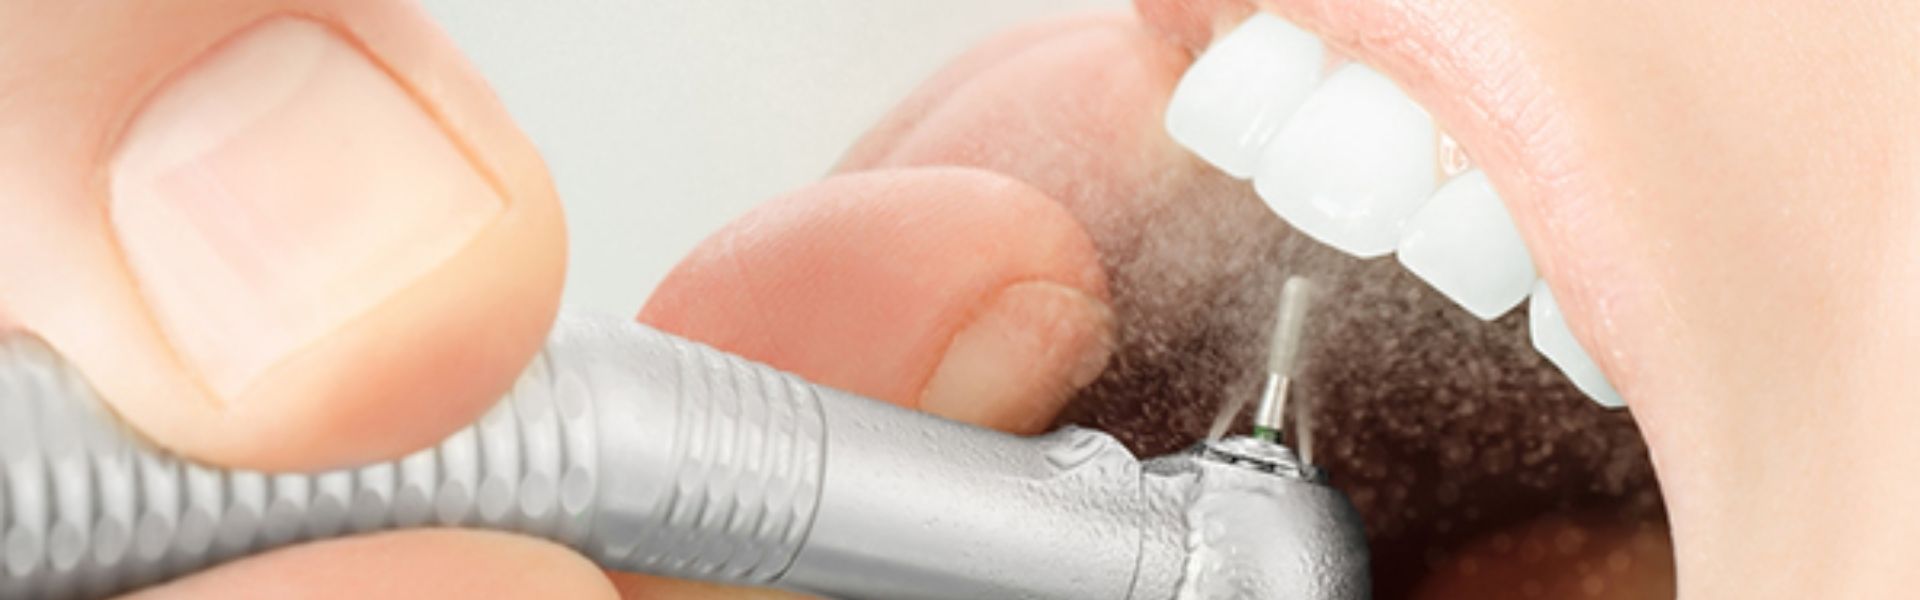 Máy cạo vôi răng bằng sóng siêu âm có nên sử dụng không?